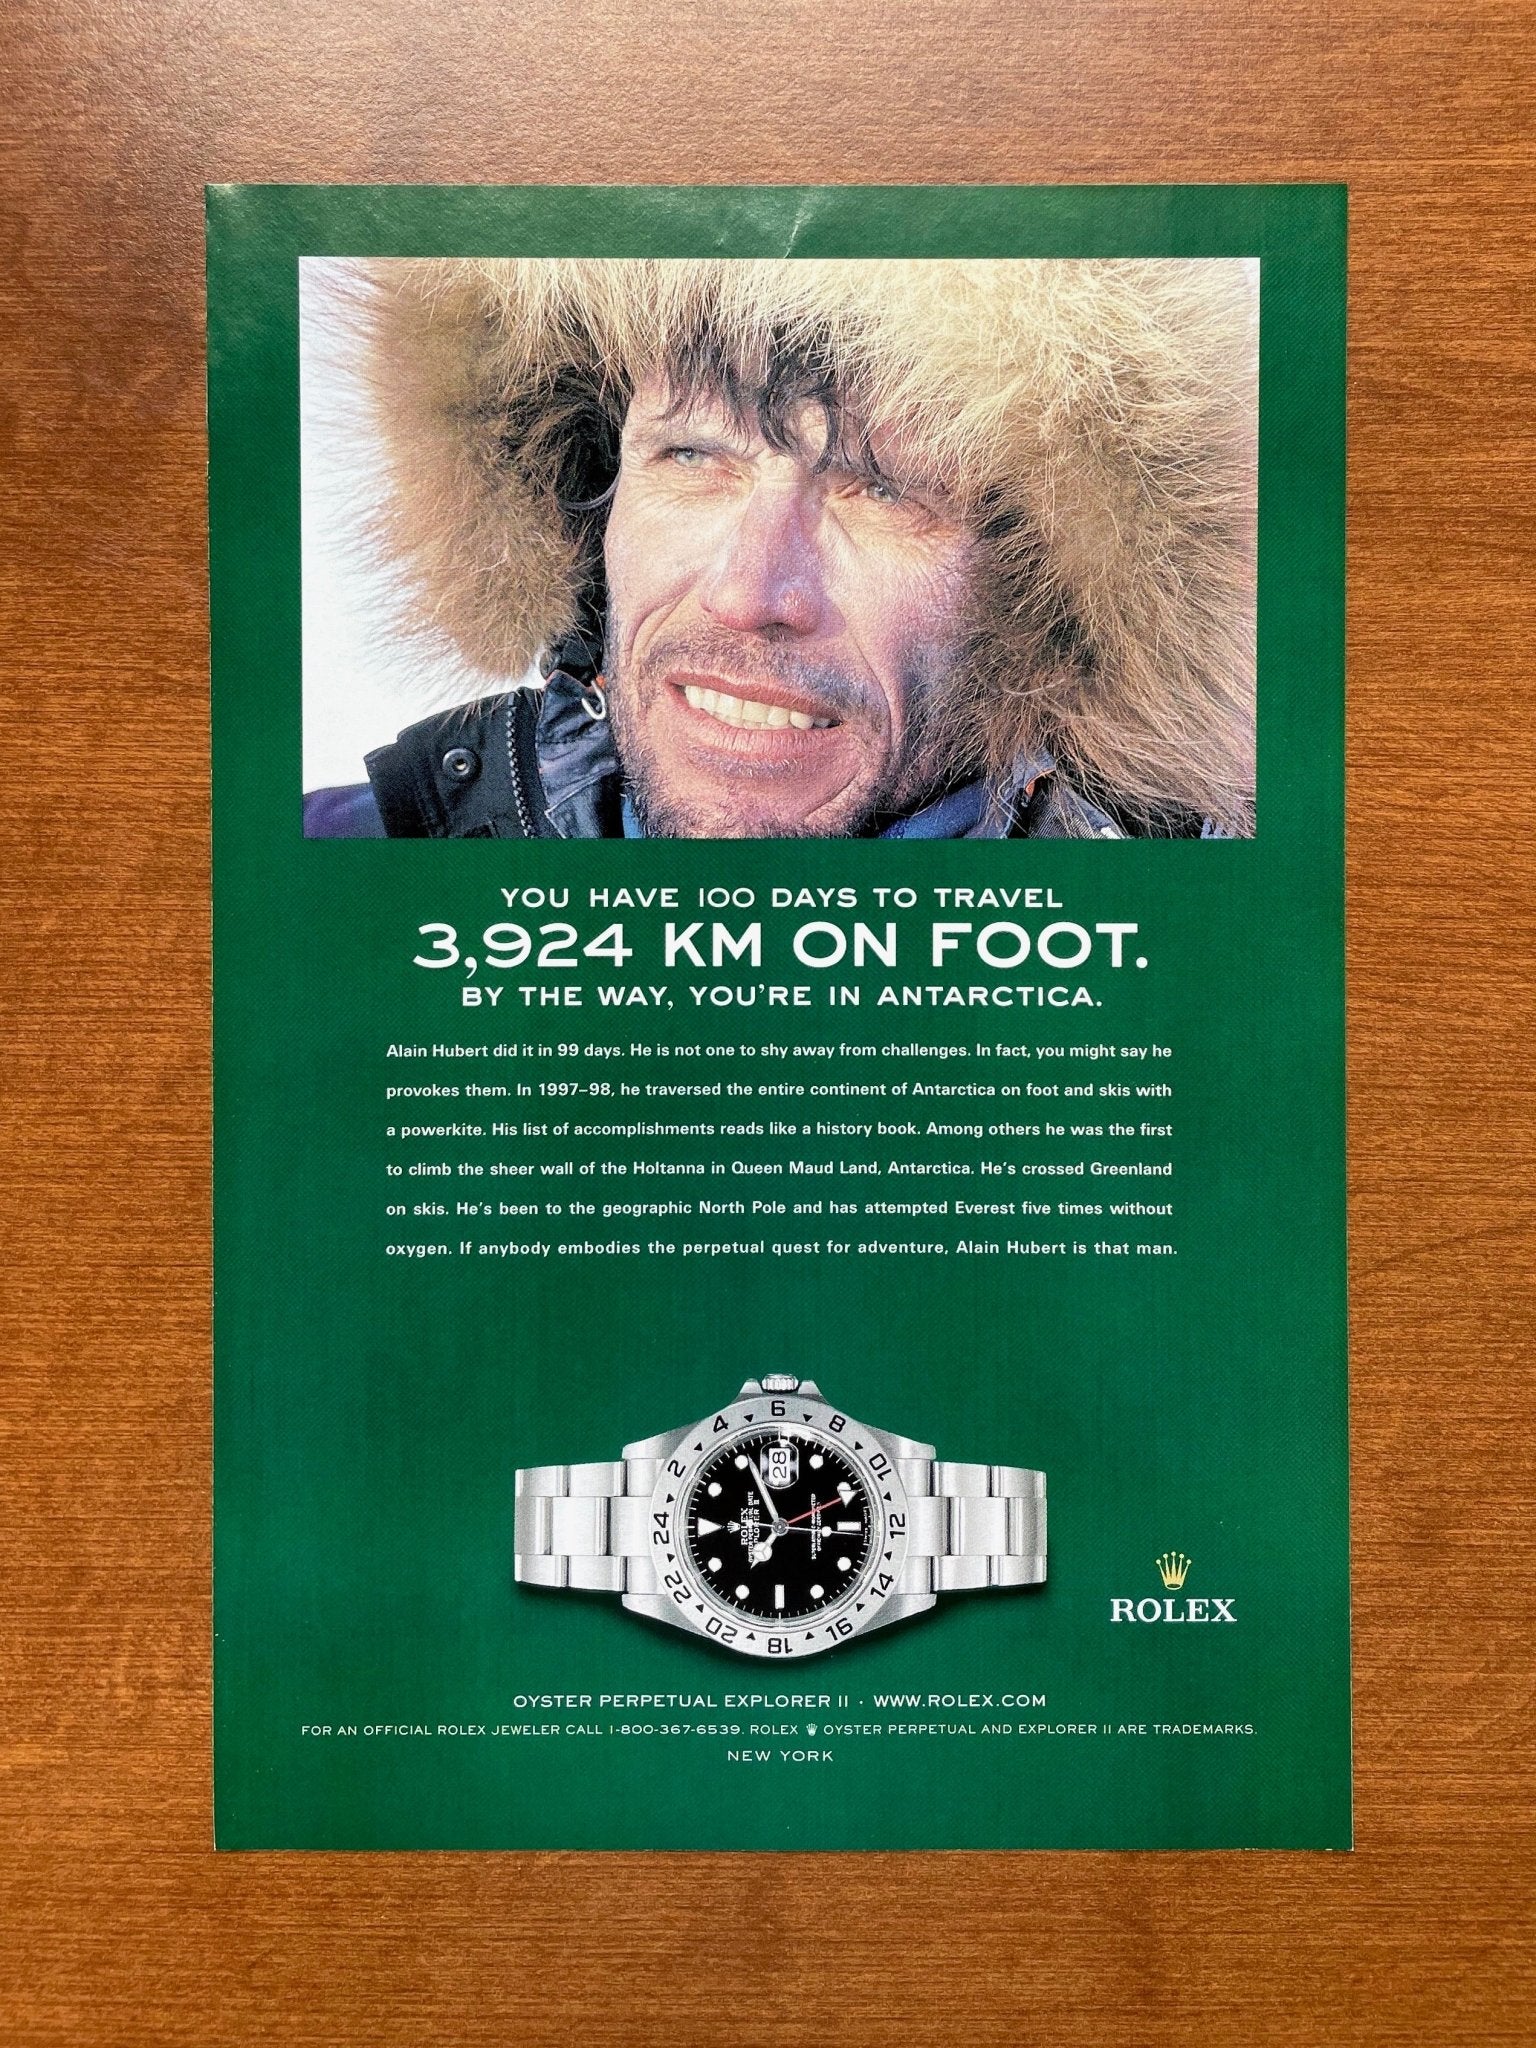 2004 Rolex Explorer II Ref. 16570 "3,924 KM On Foot." Advertisement